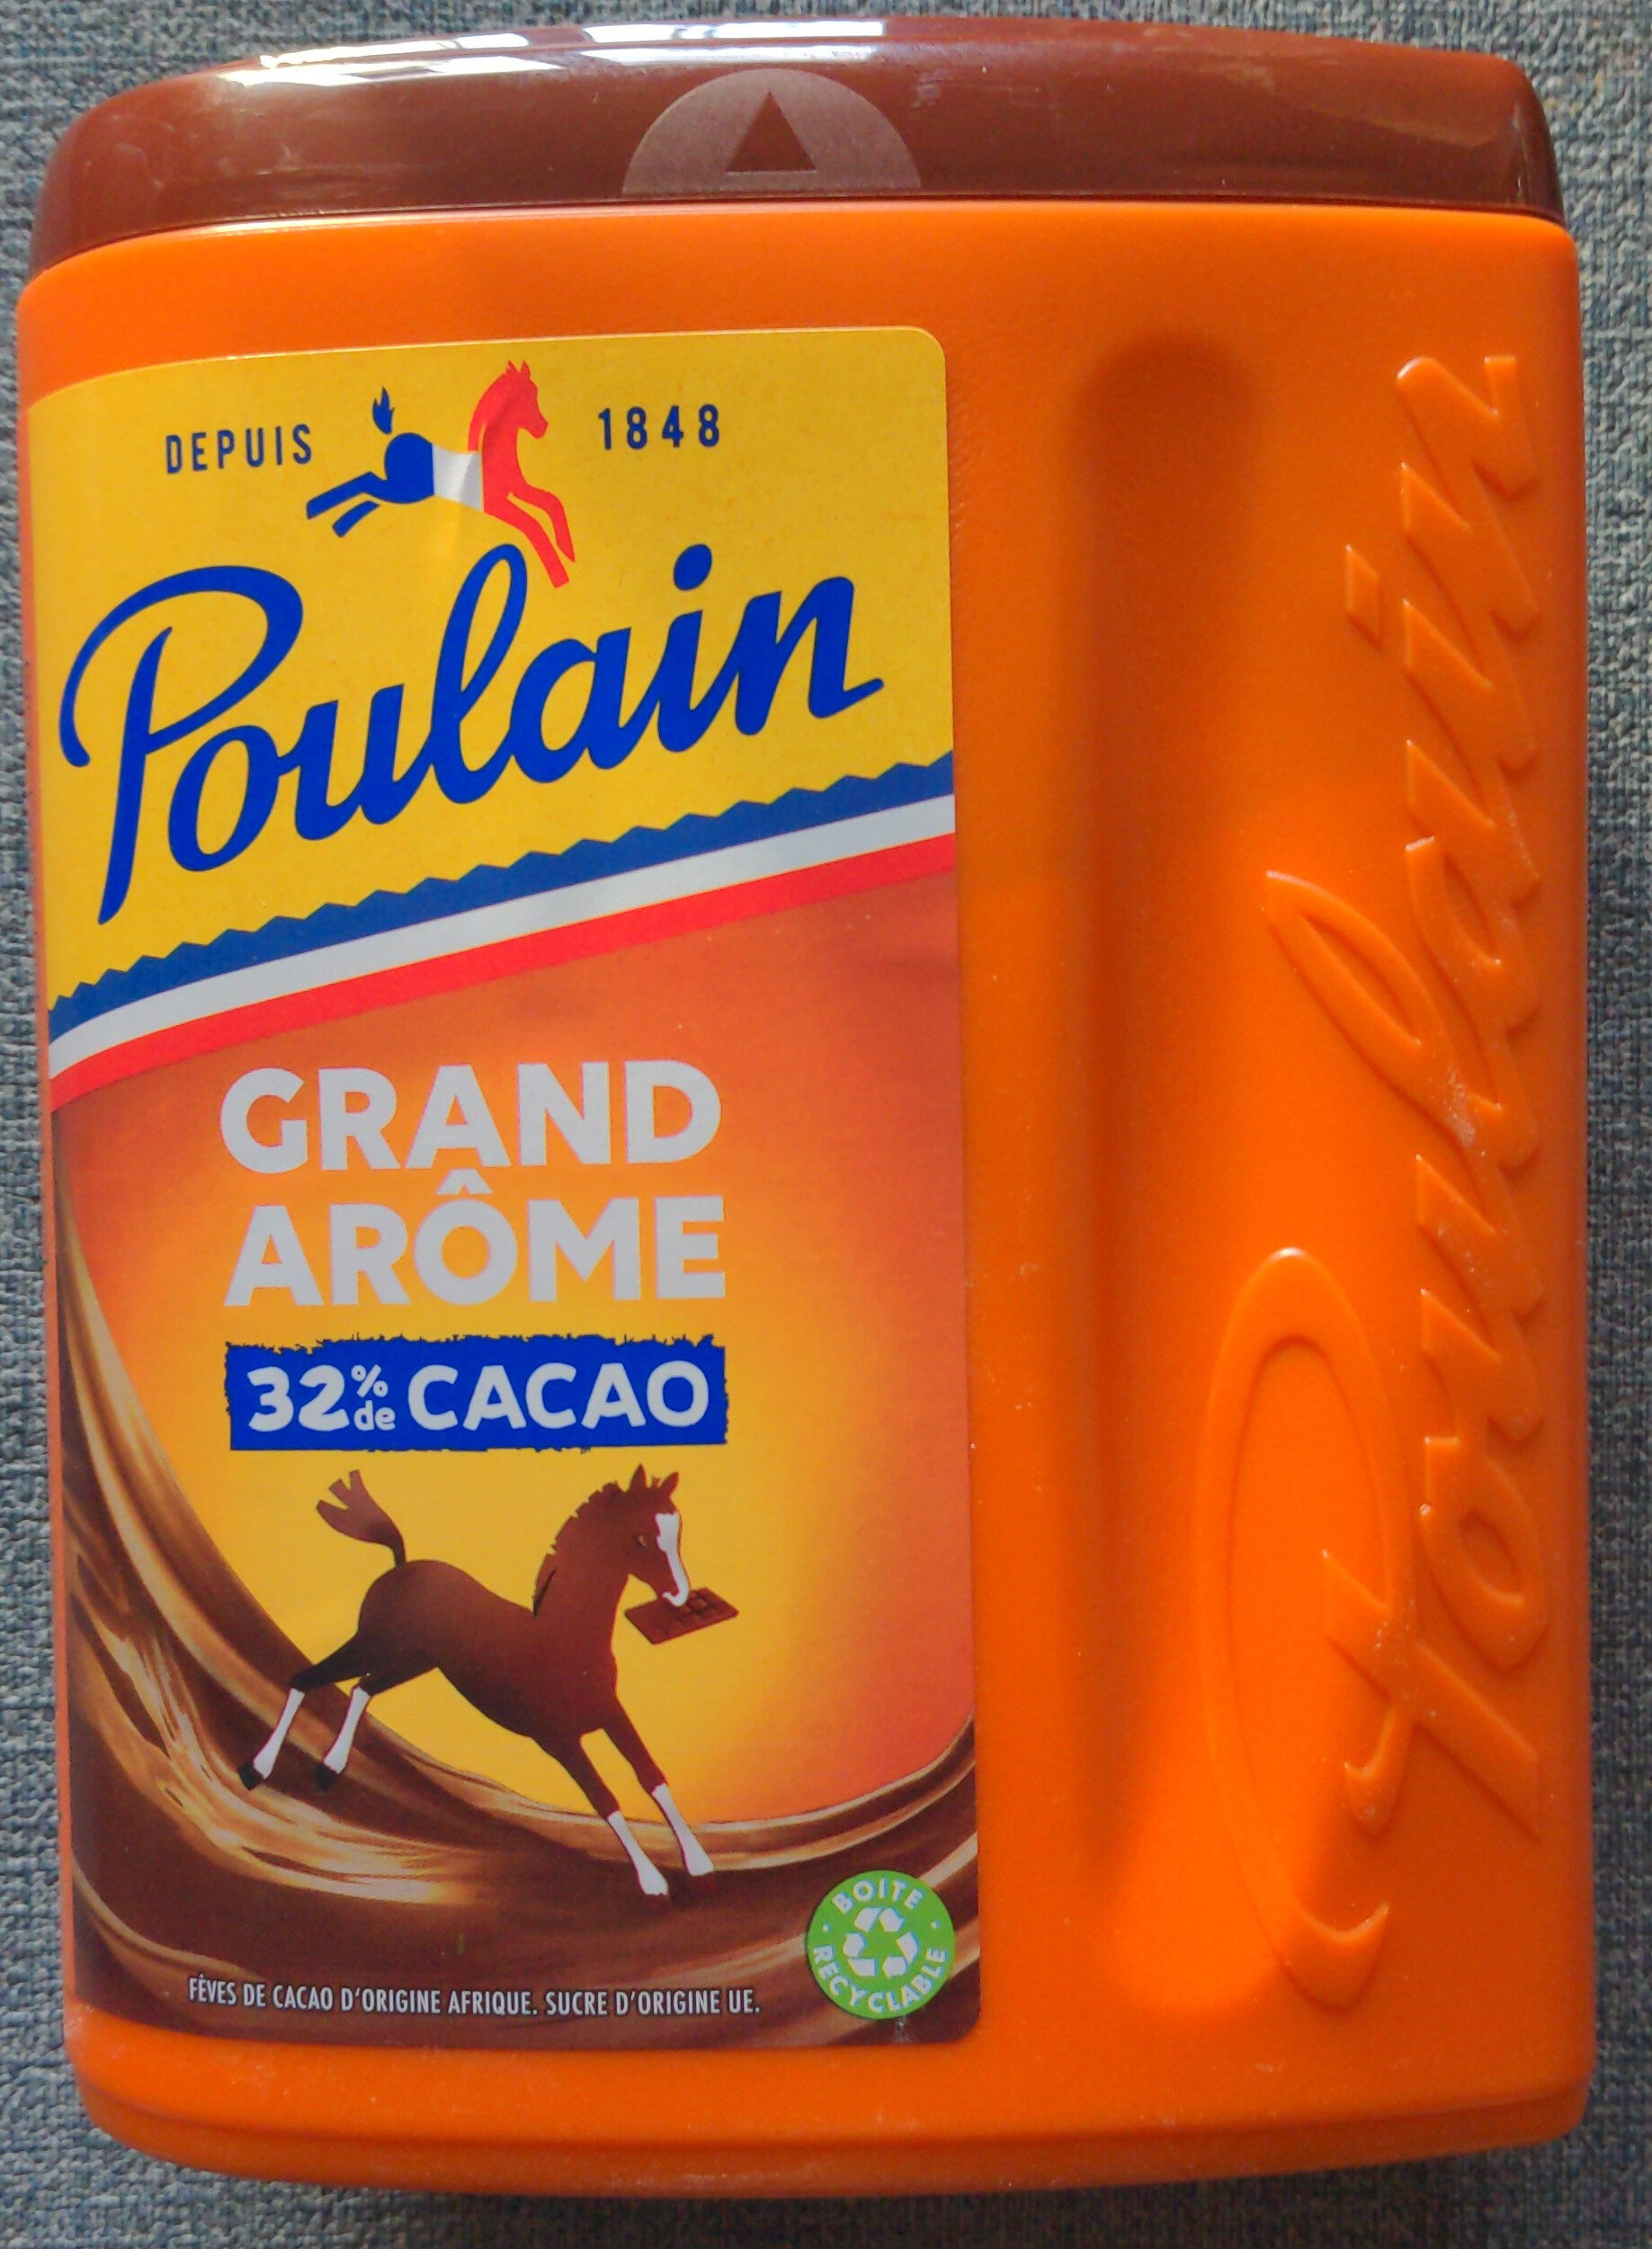 Grand Arôme 32% de Cacao - Product - fr